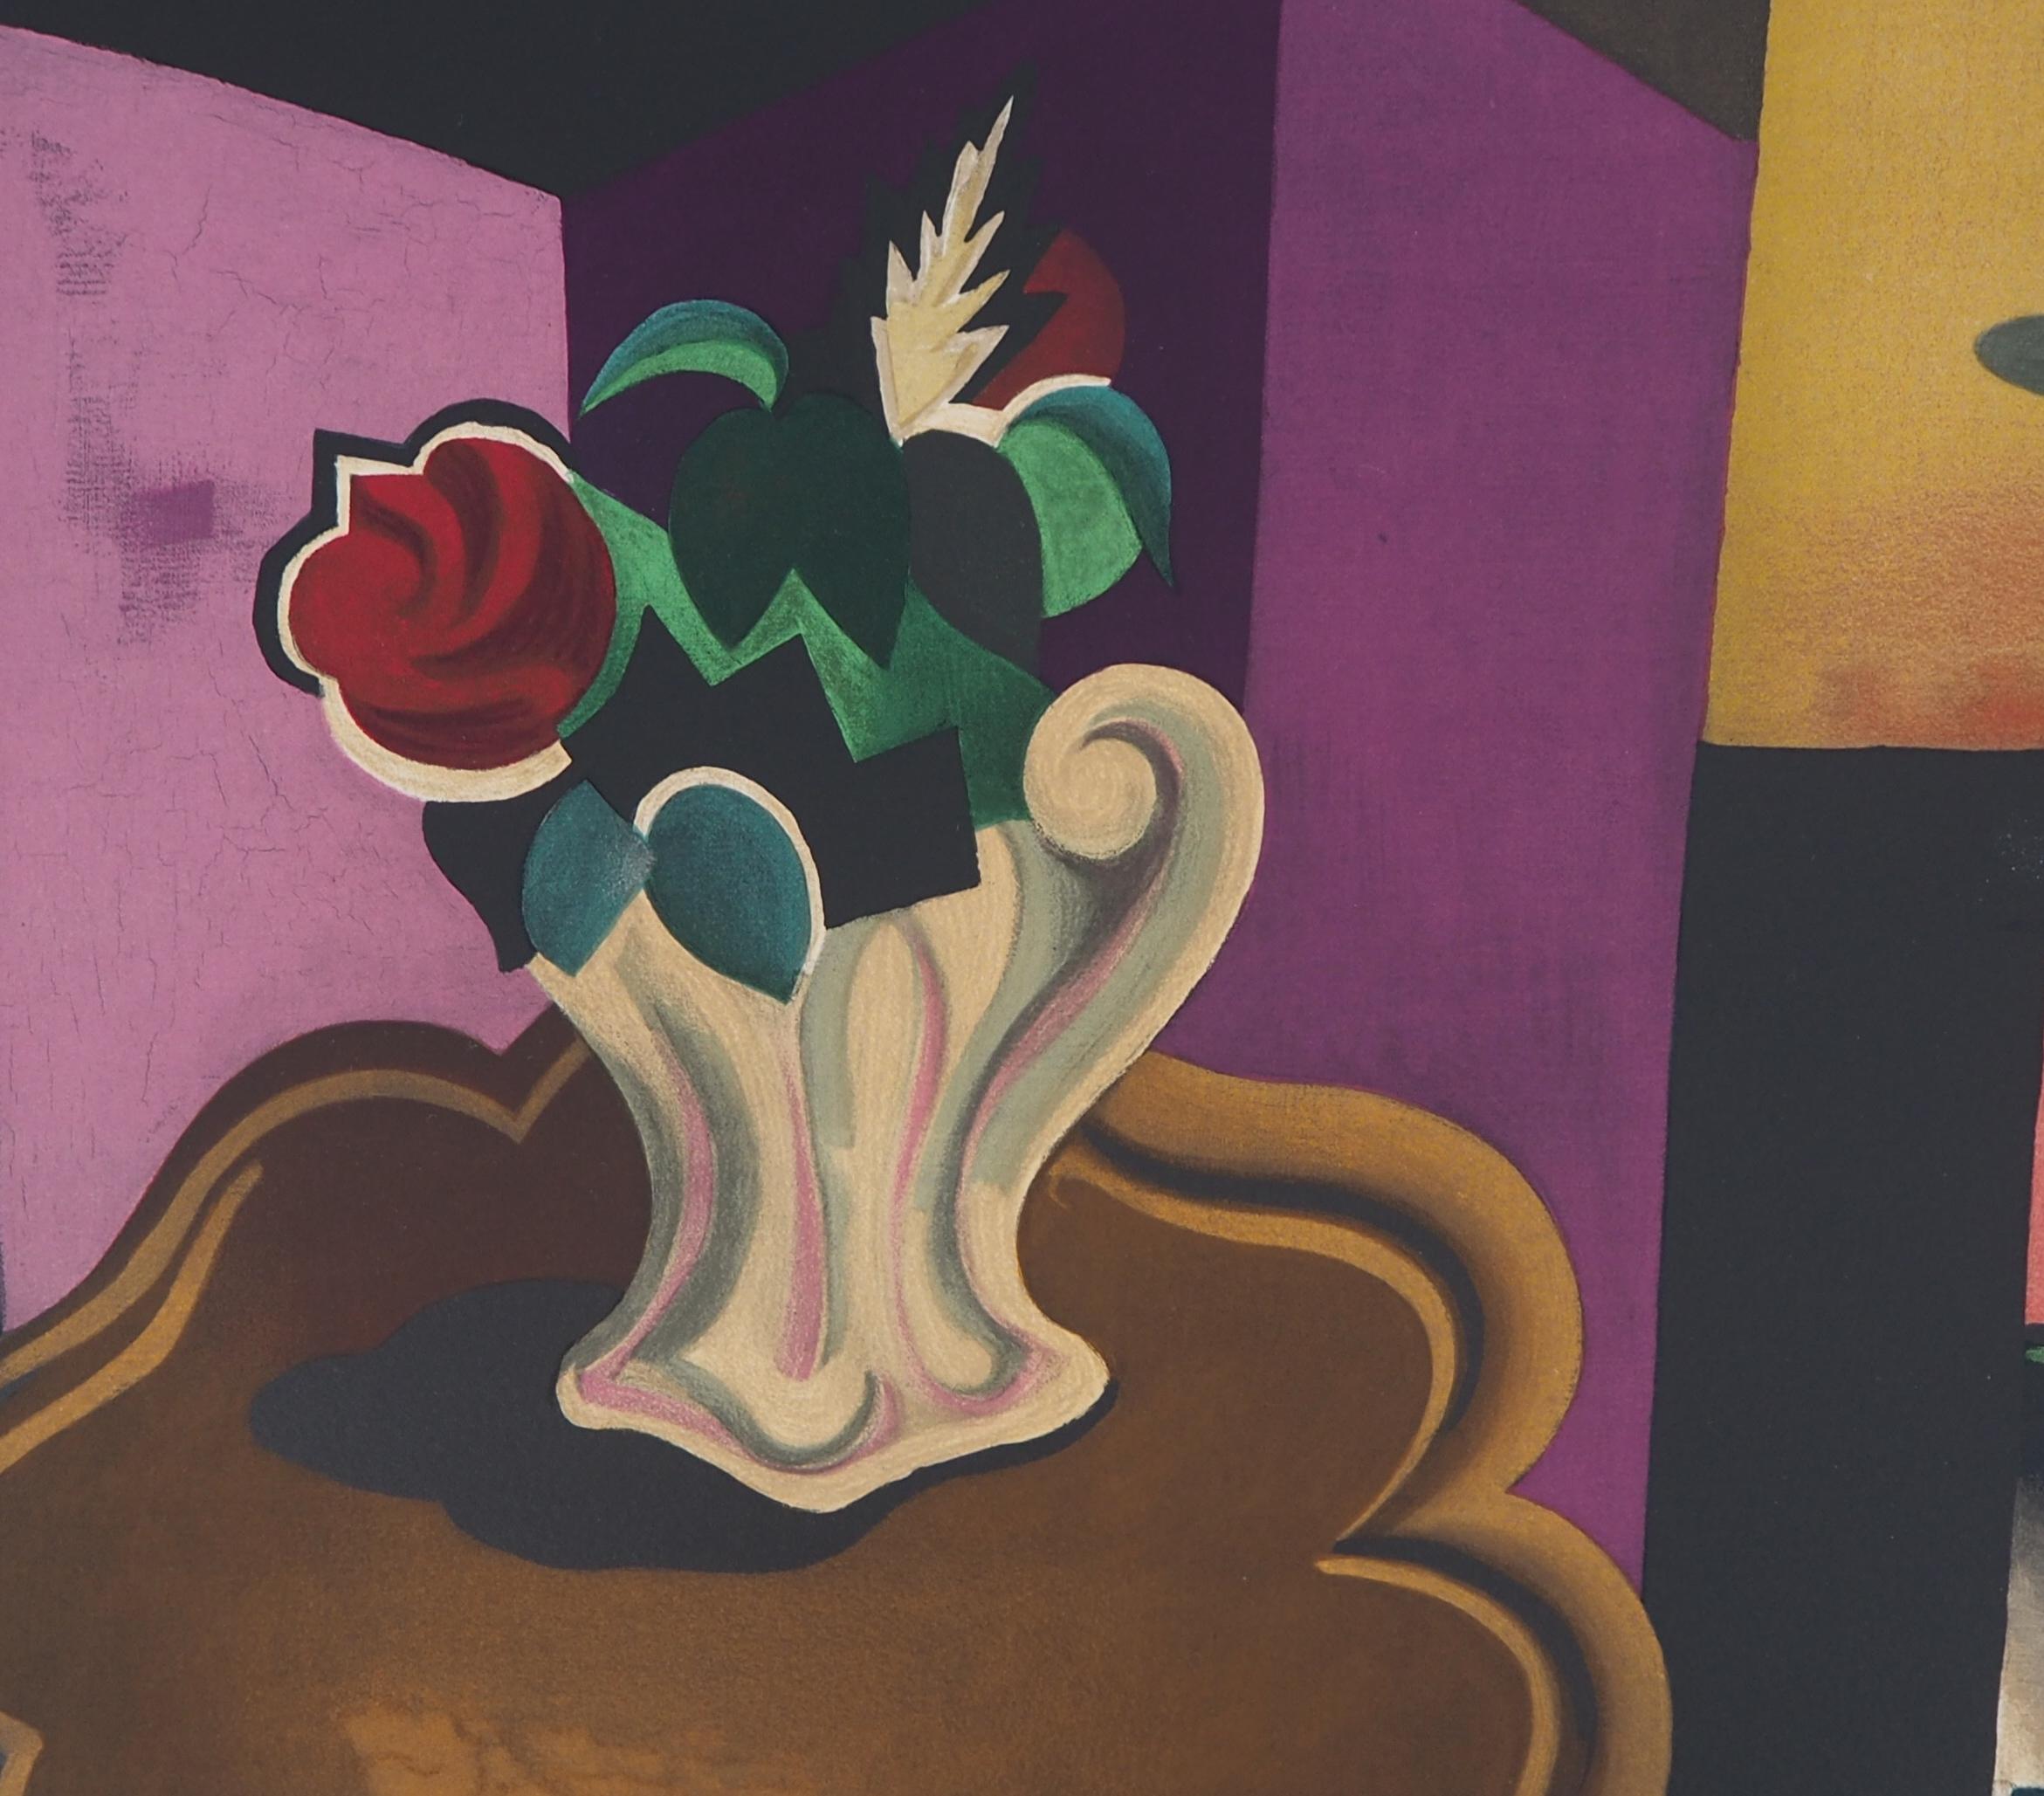 Roger de la Fresnaye
Intérieur cubiste avec bouquet de roses

Lithographie sur pierre d'après une peinture
Imprimé dans l'atelier de Mourlot
Signature imprimée dans la plaque
Sur vellum d'Arches 50 x 65 cm (c. 20 x 26 inch)

Excellent état